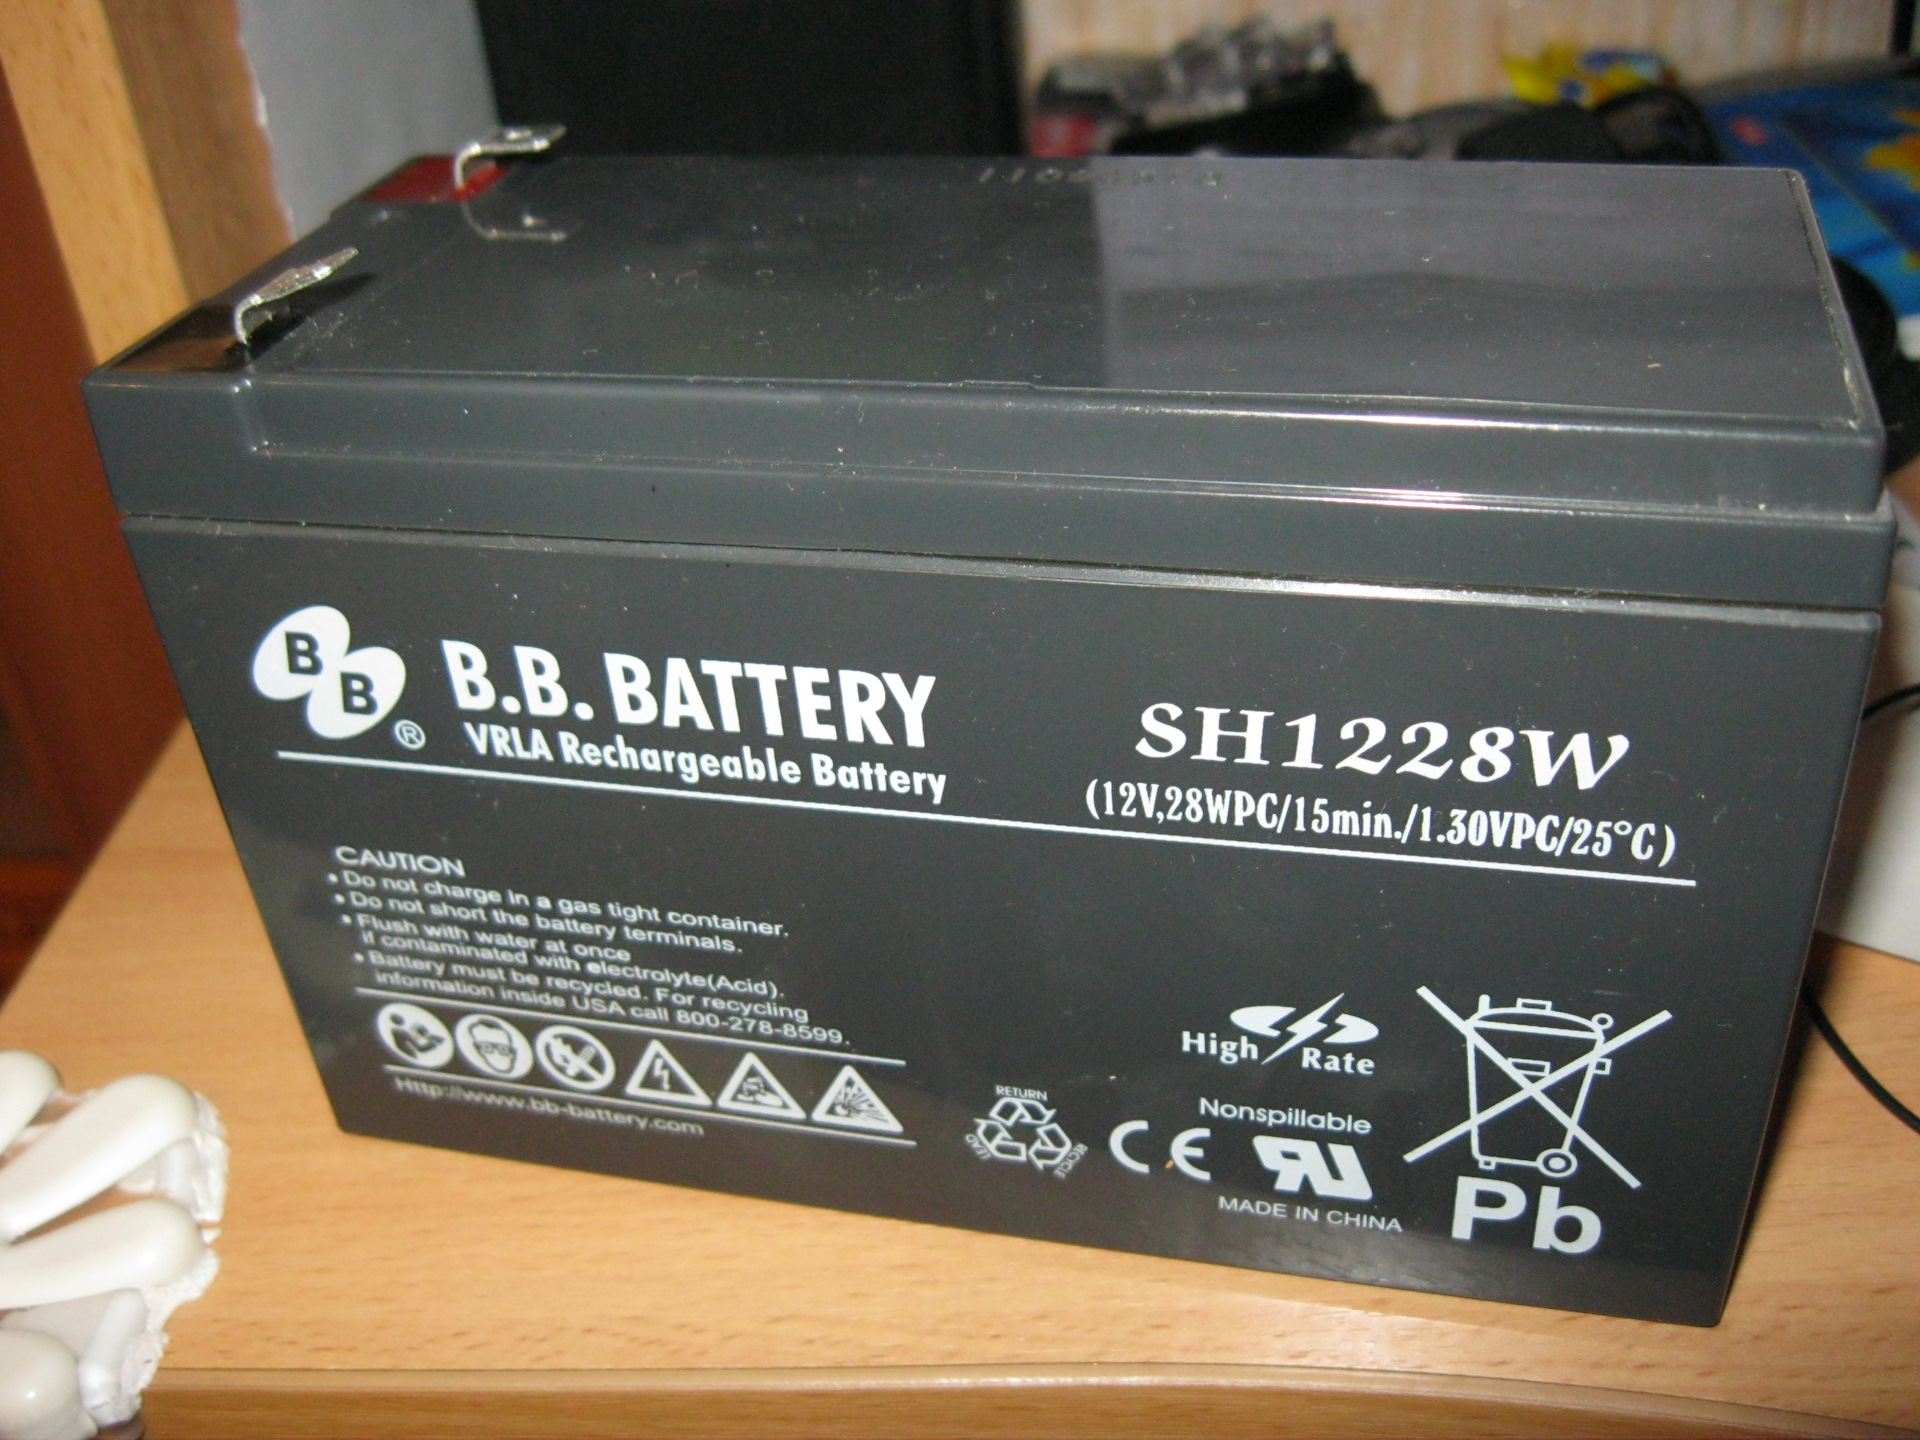 Что означает battery. Аккумулятор BB Battery sh1228w. Аккумулятор sh1228w 12v b.b.Battery 28wpc/15min/1.0VPC/25. Аккумулятор b.b. Battery sh1228w s. Sh1228w аккумулятор для ИБП.